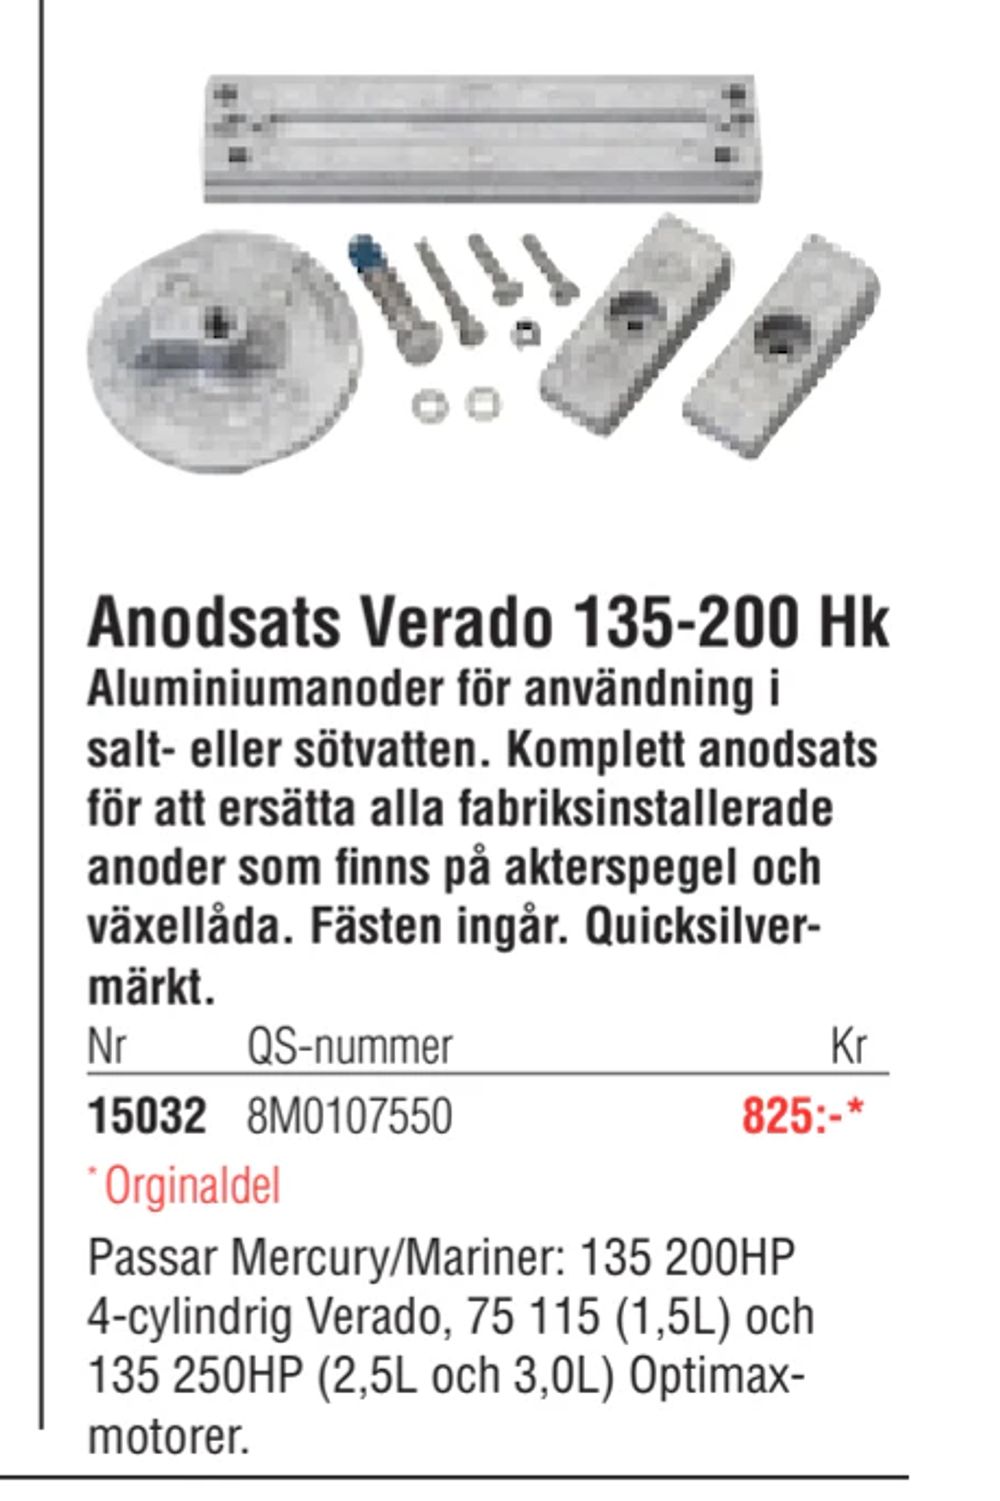 Erbjudanden på Anodsats Verado 135-200 Hk från Erlandsons Brygga för 825 kr